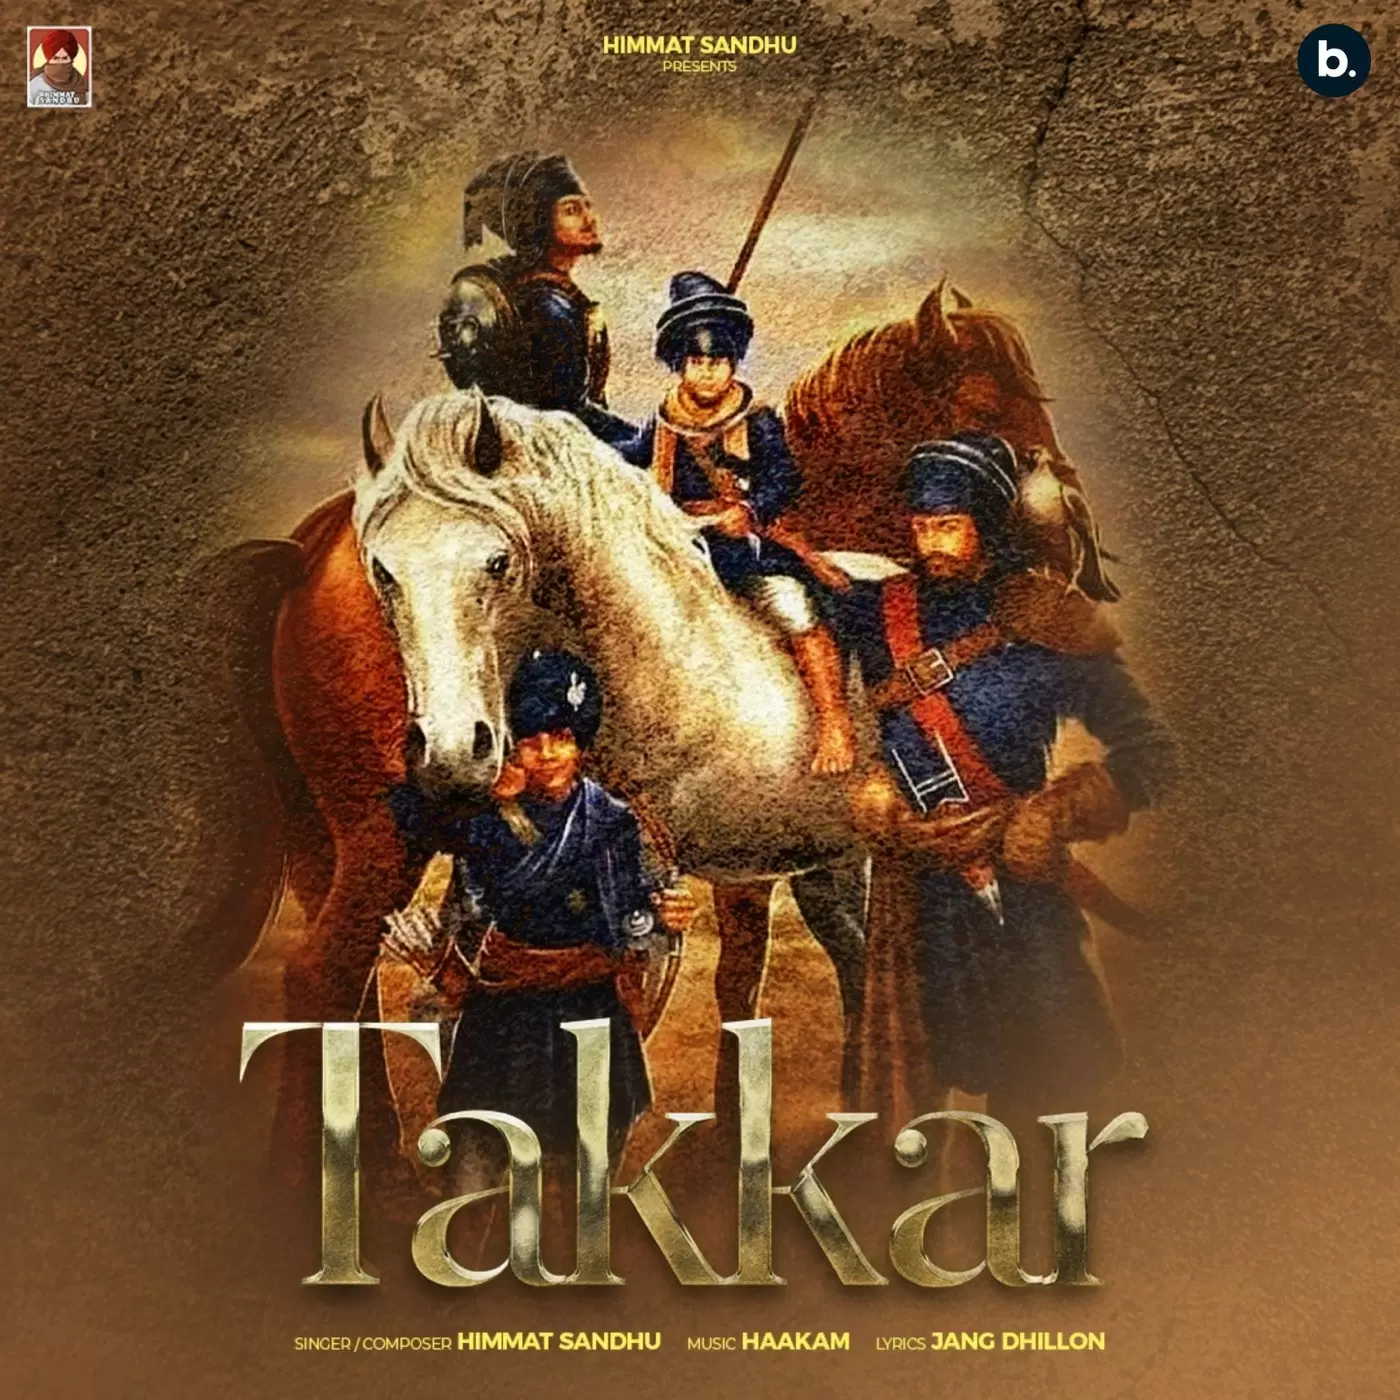 Takkar - Single Song by Himmat Sandhu - Mr-Punjab